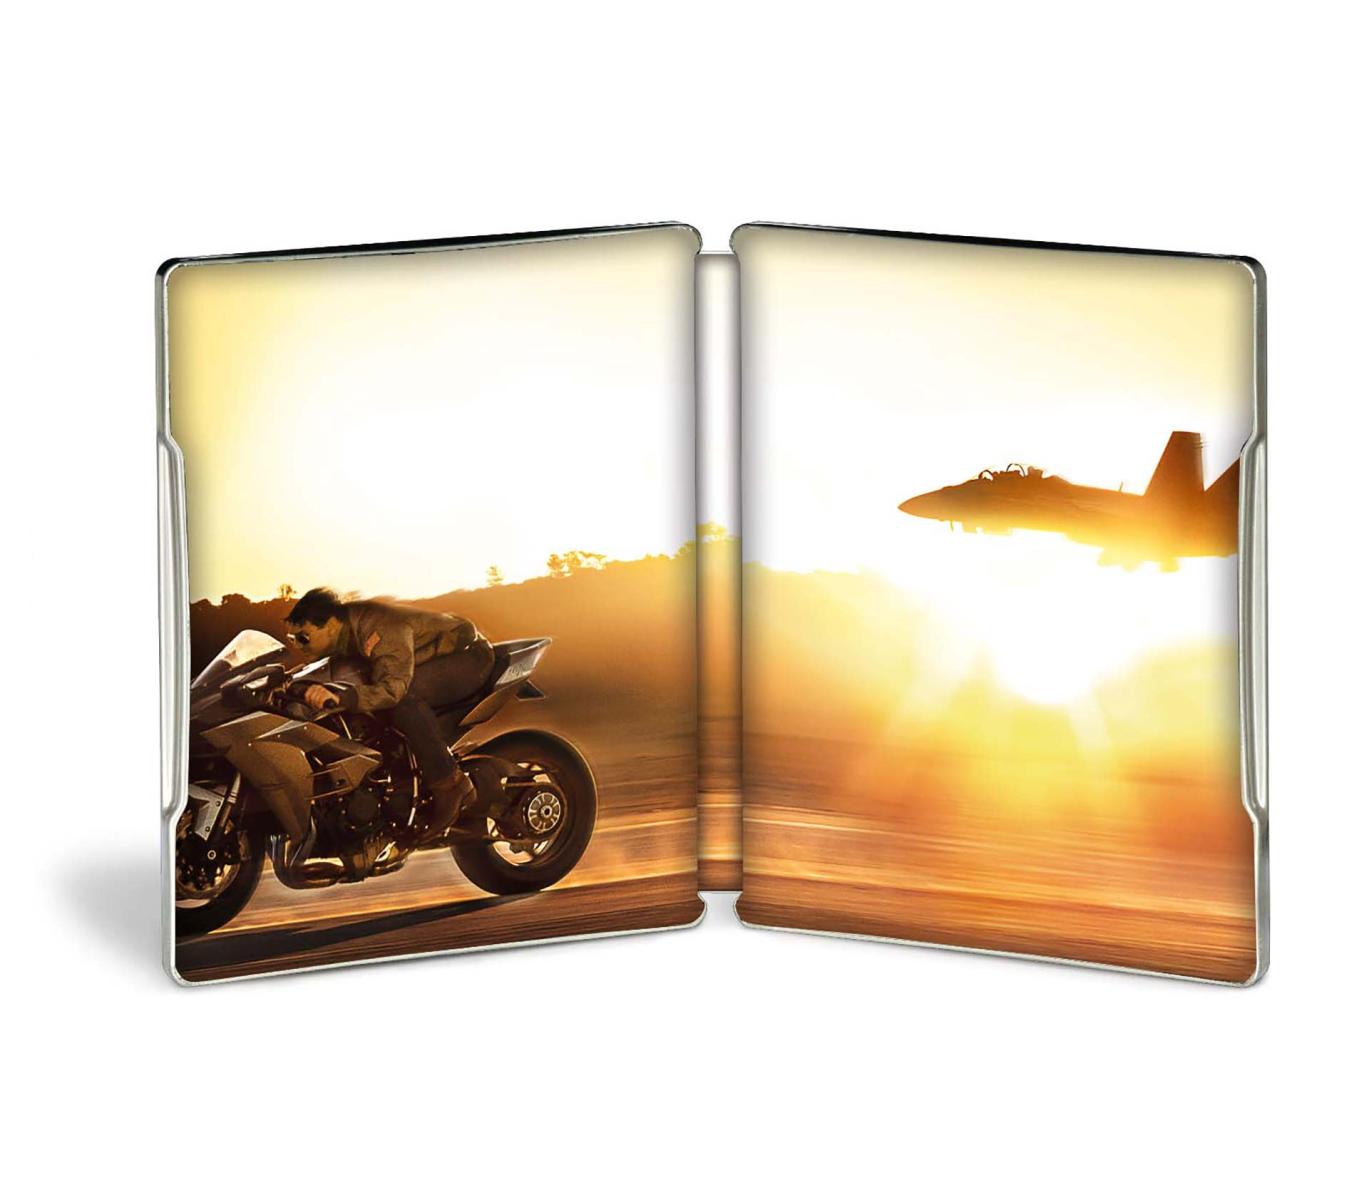 Top Gun: Maverick - Steelbook Blu-ray 4K UHD + Blu-ray (Blu-ray) Image 2